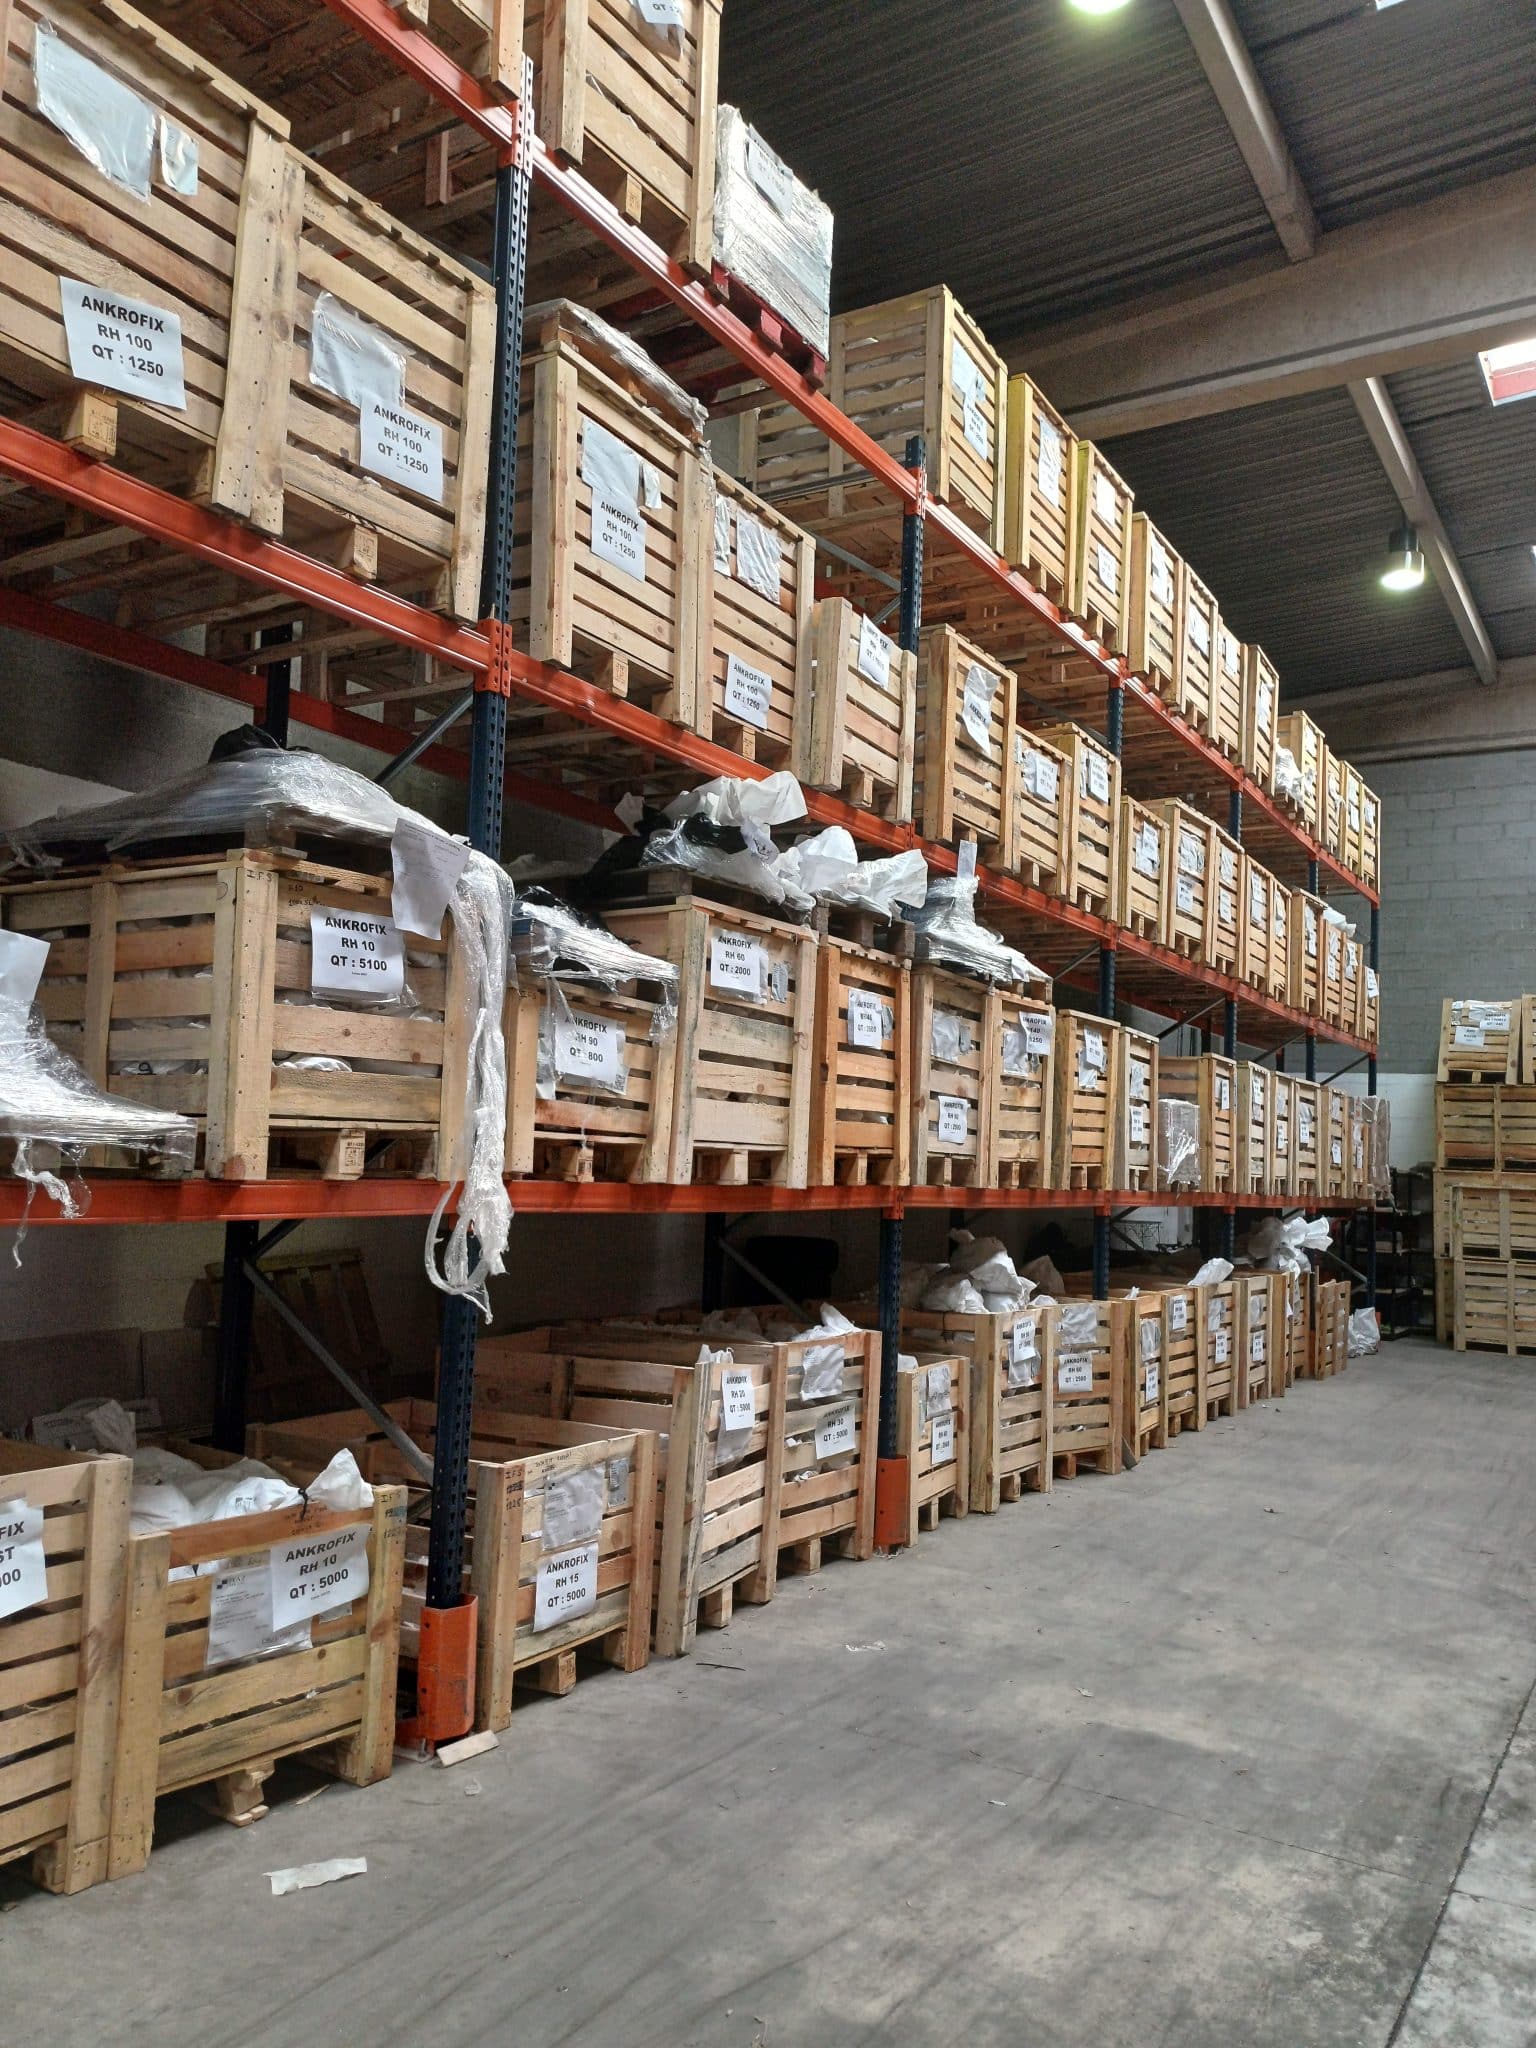 Image de présentation d'un entrepôt dans lequel sont stockées des caisses en bois.